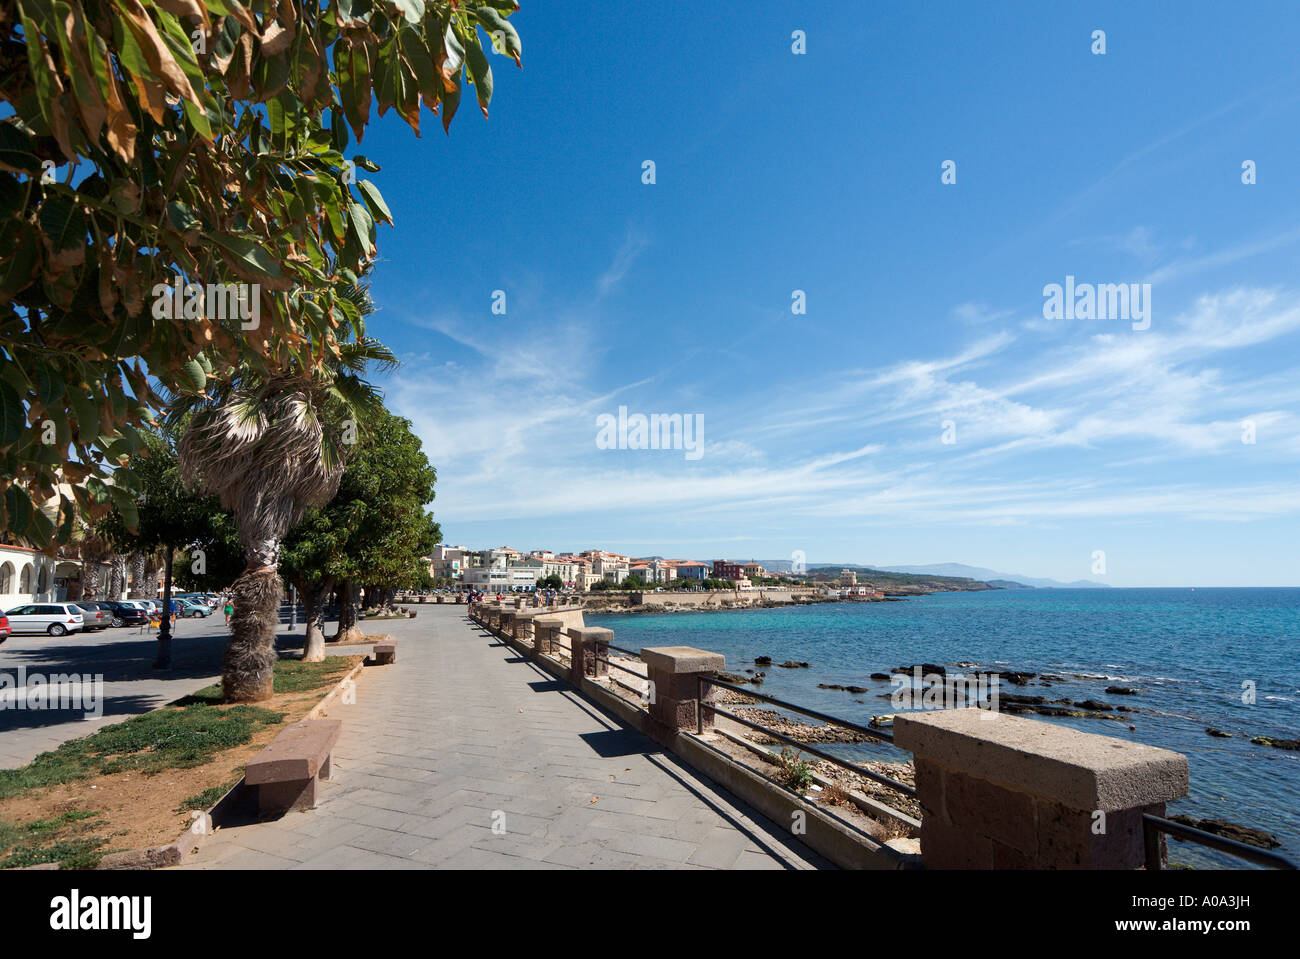 Promenade en bord de mer à proximité de la vieille ville, Alghero, Sardaigne, Italie Banque D'Images